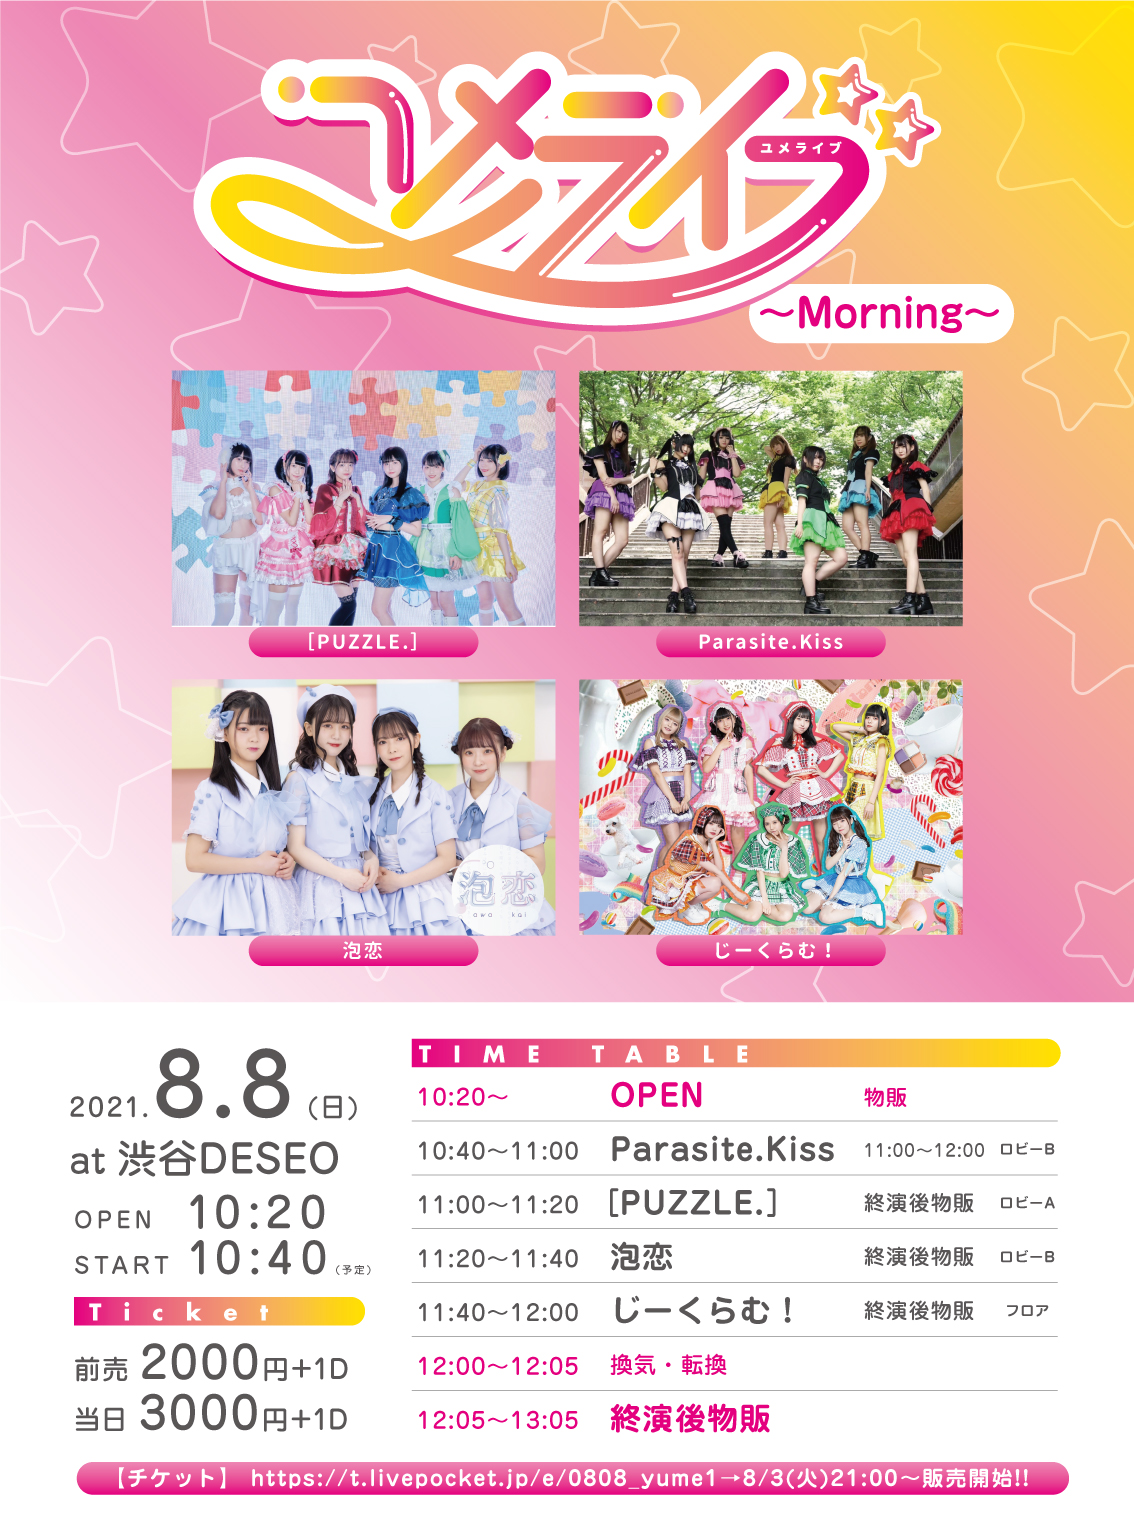 2021/8/8(日)DESEO 1部 『ユメライブ〜Morning〜』 渋谷DESEO